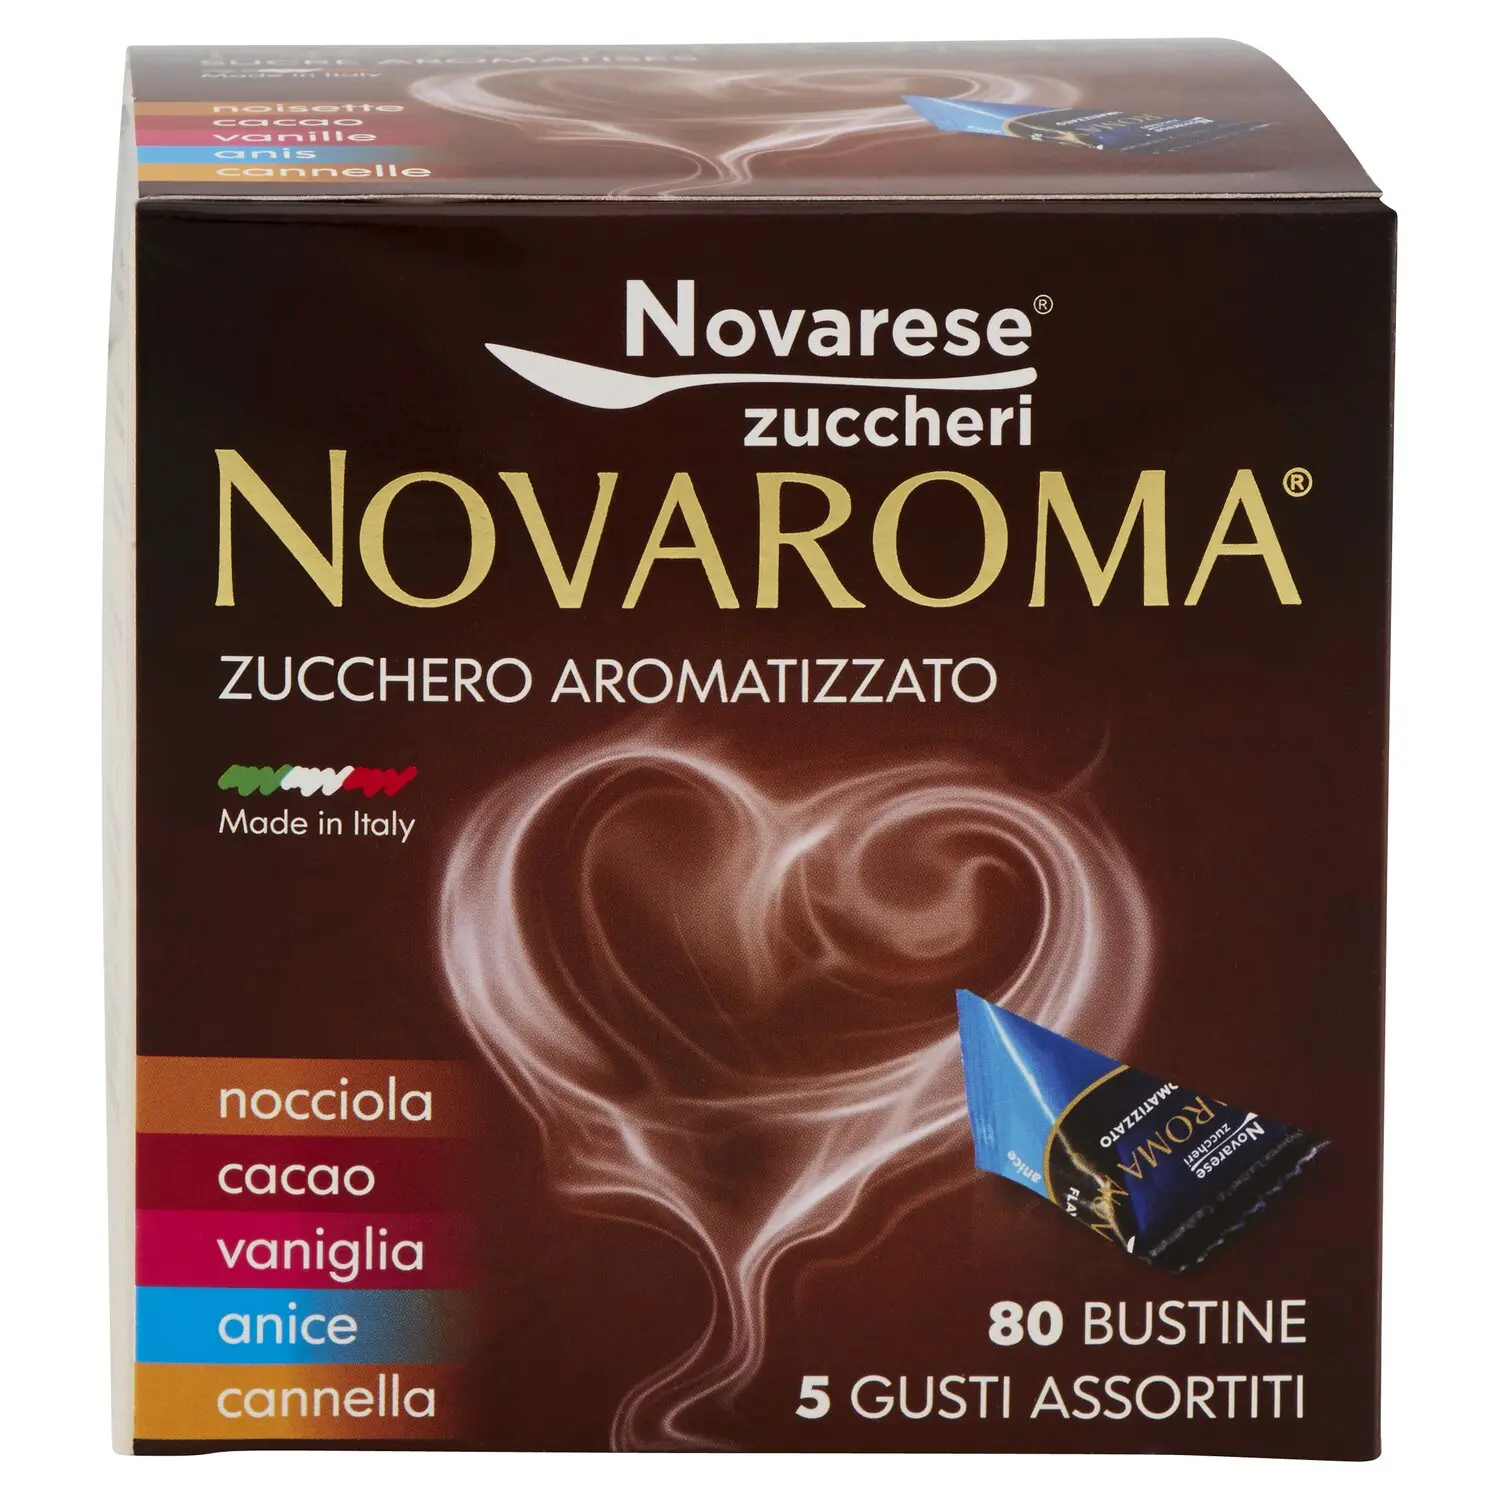 Novaroma Zucchero Aromatizzato nocciola - cacao - vaniglia - anice